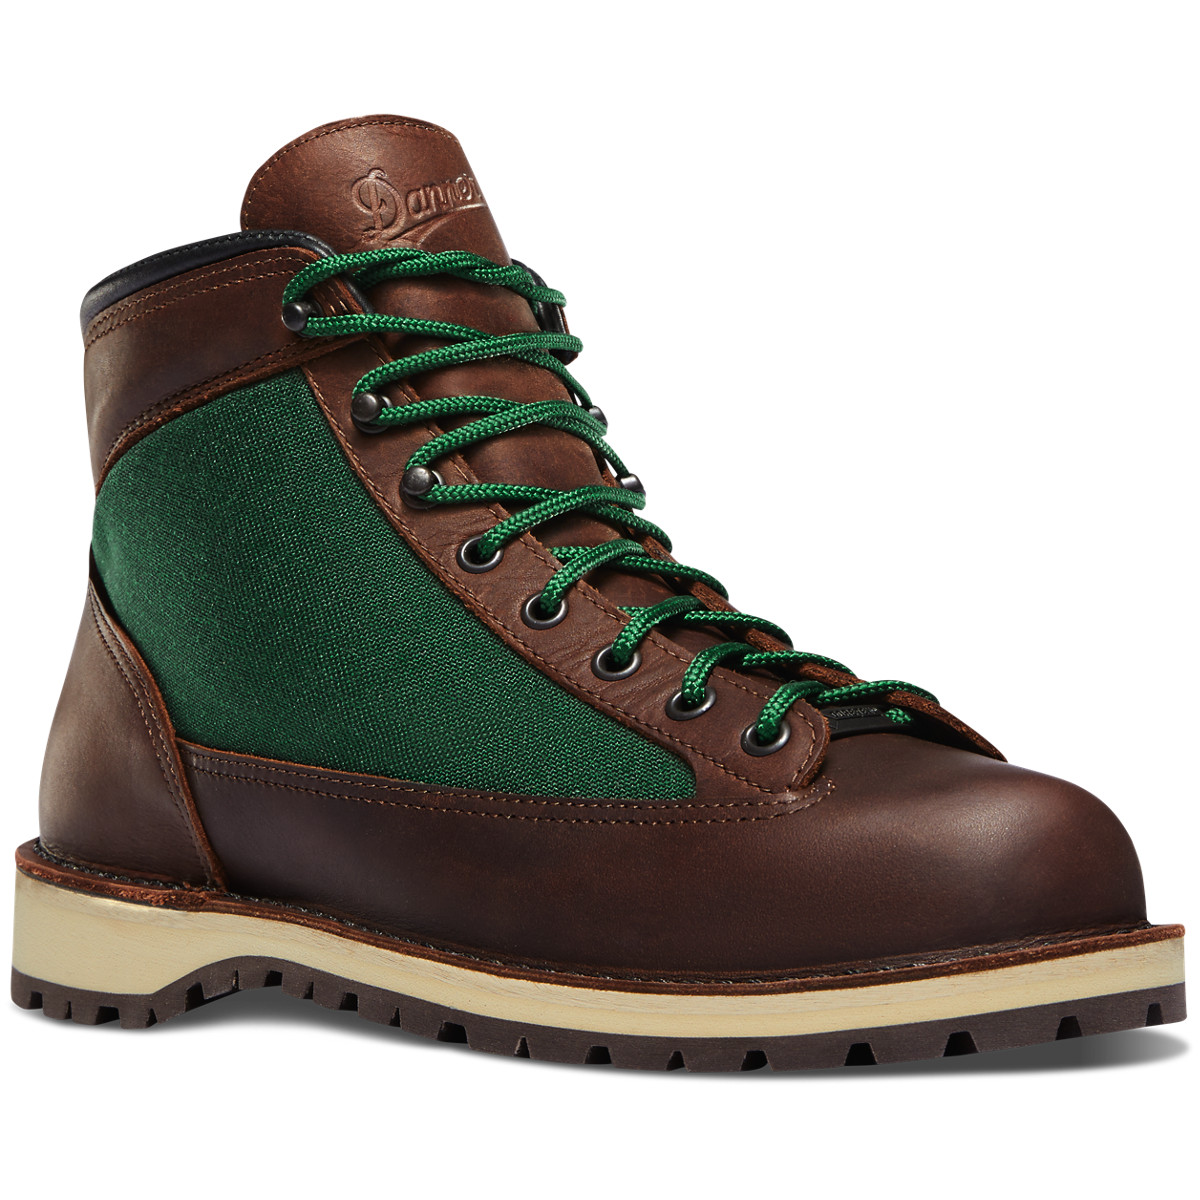 Danner Mens Ridge Hiking Boots Dark Brown/Green - SDA709625